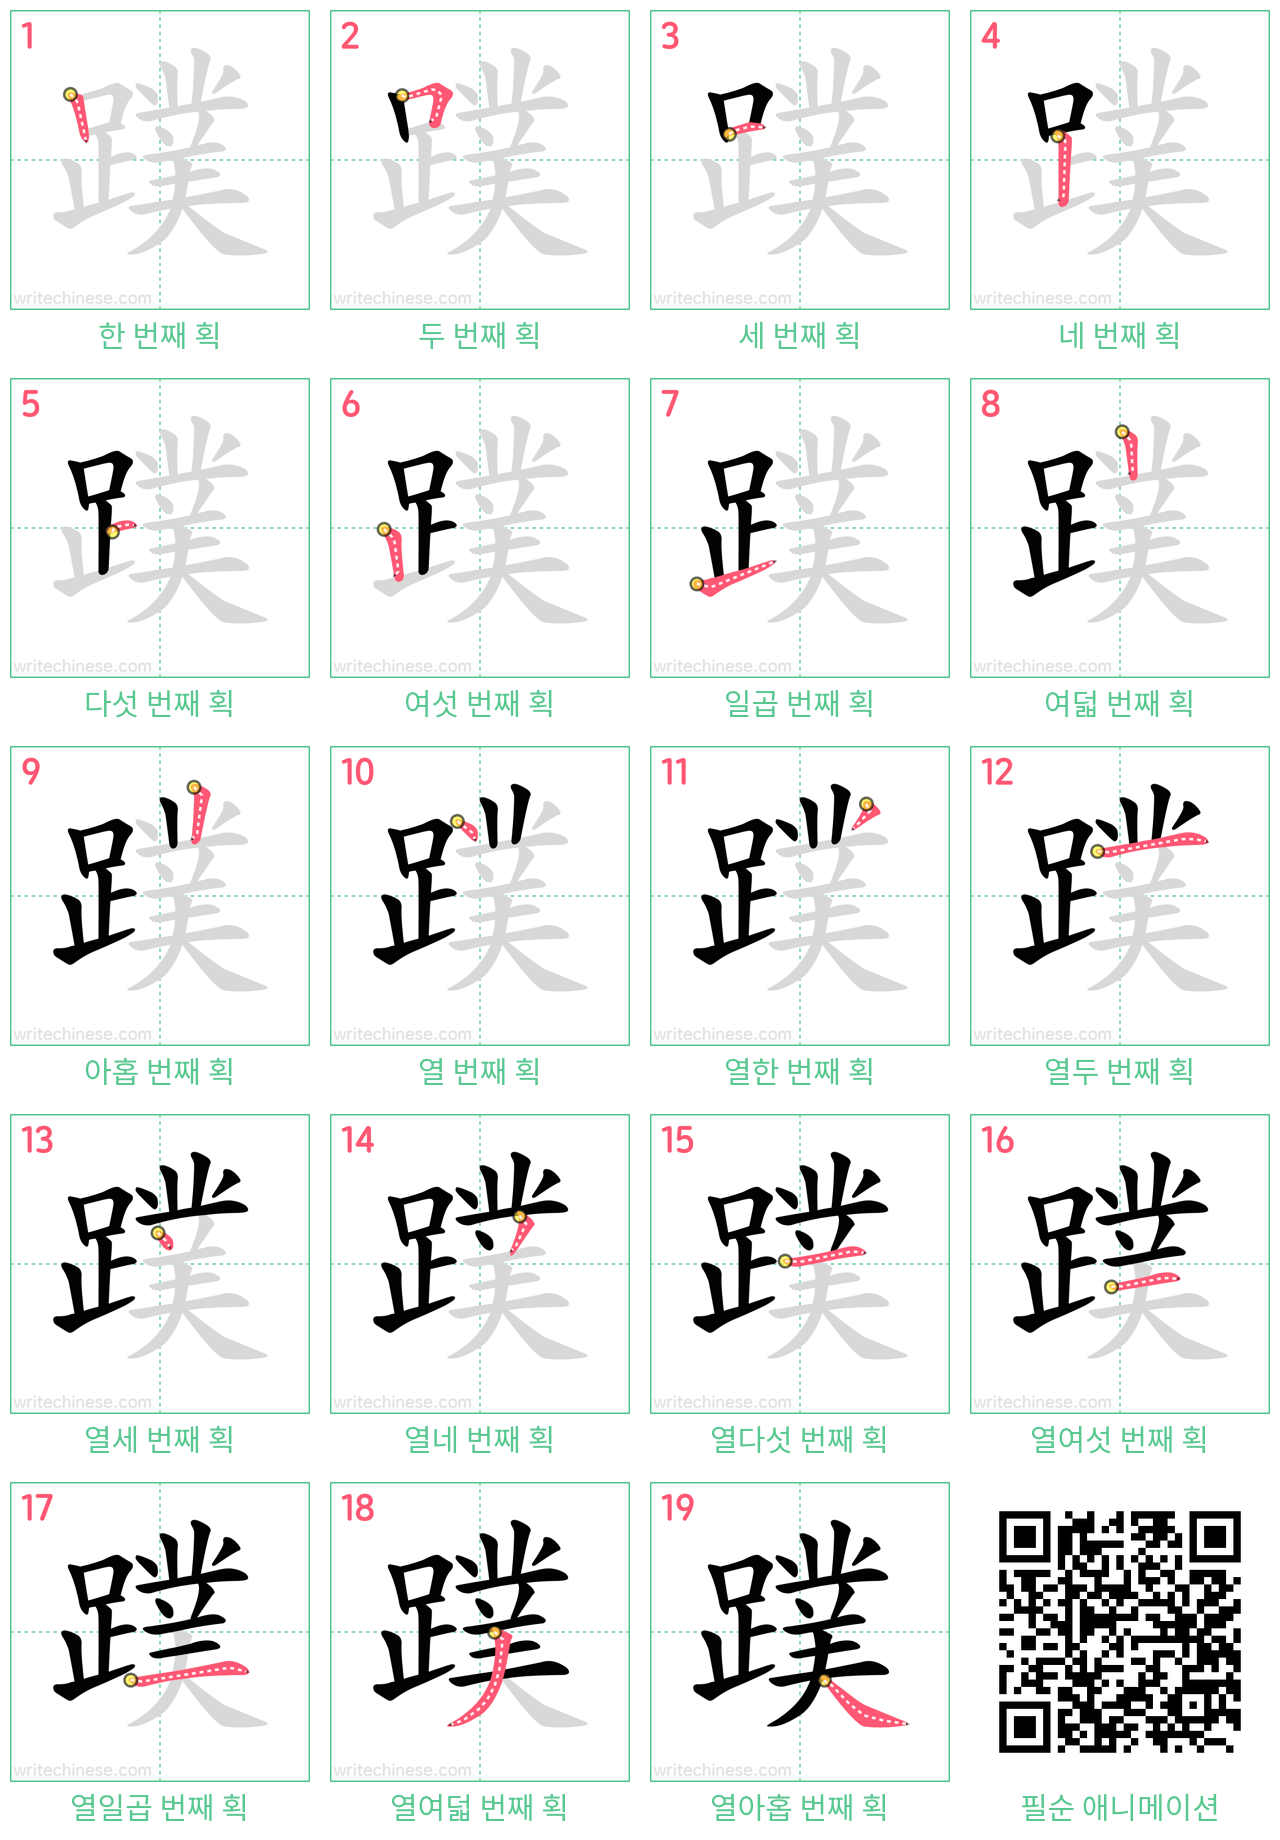 蹼 step-by-step stroke order diagrams